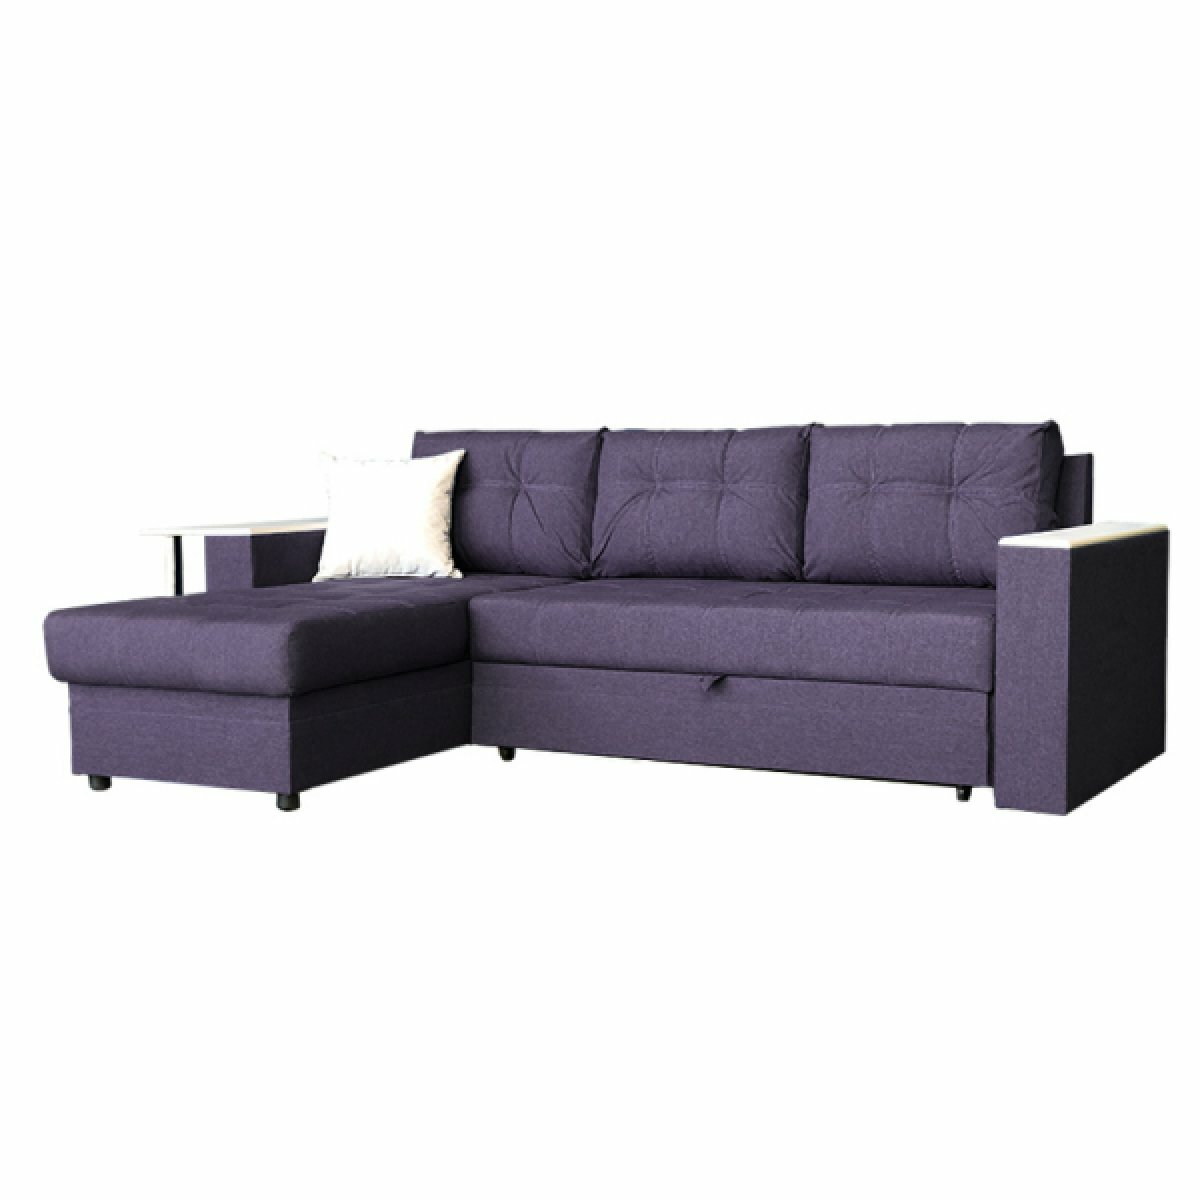 Угловой диван с баром "Атлант" - Кватро 10 (рогожка), дуб беленый